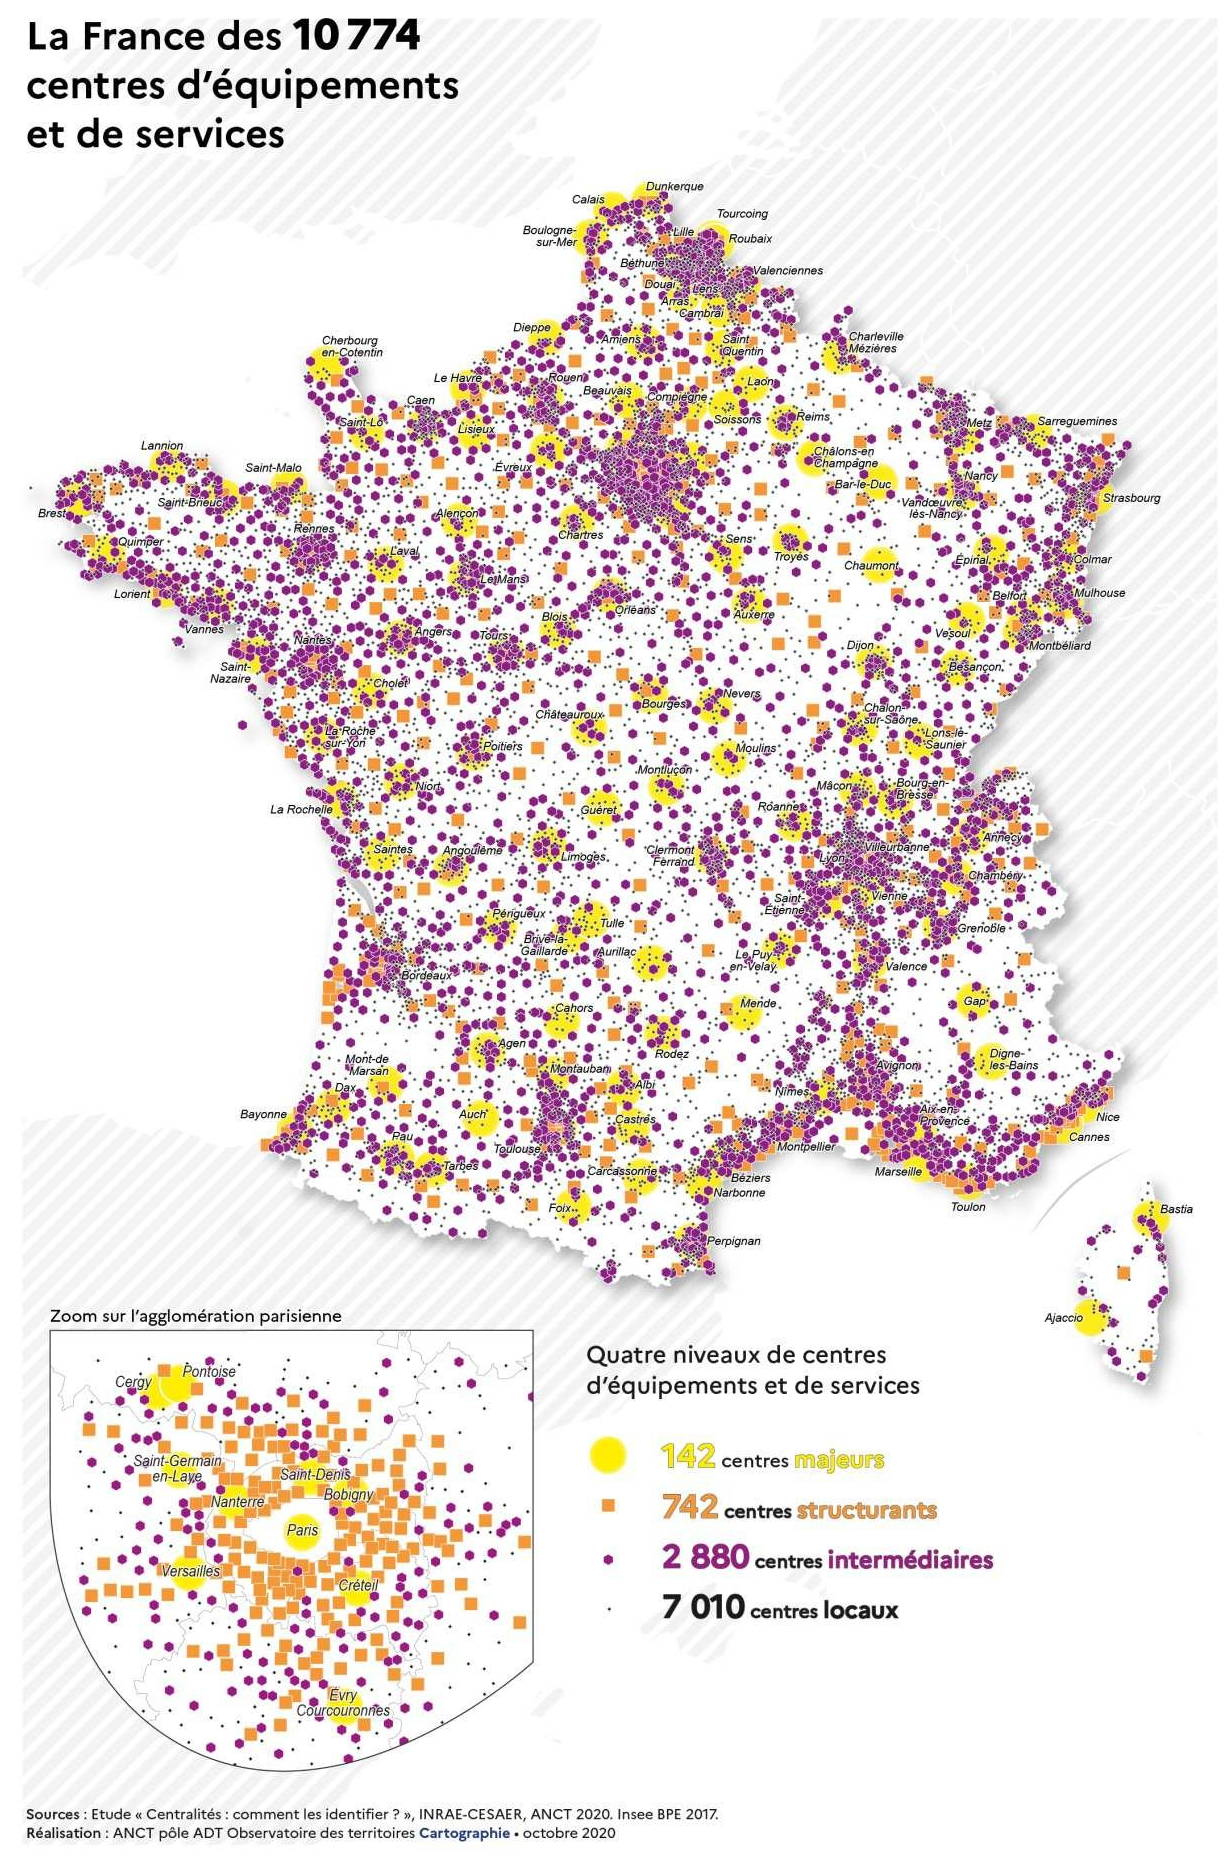 La France des 10774 centres d'équipements et services